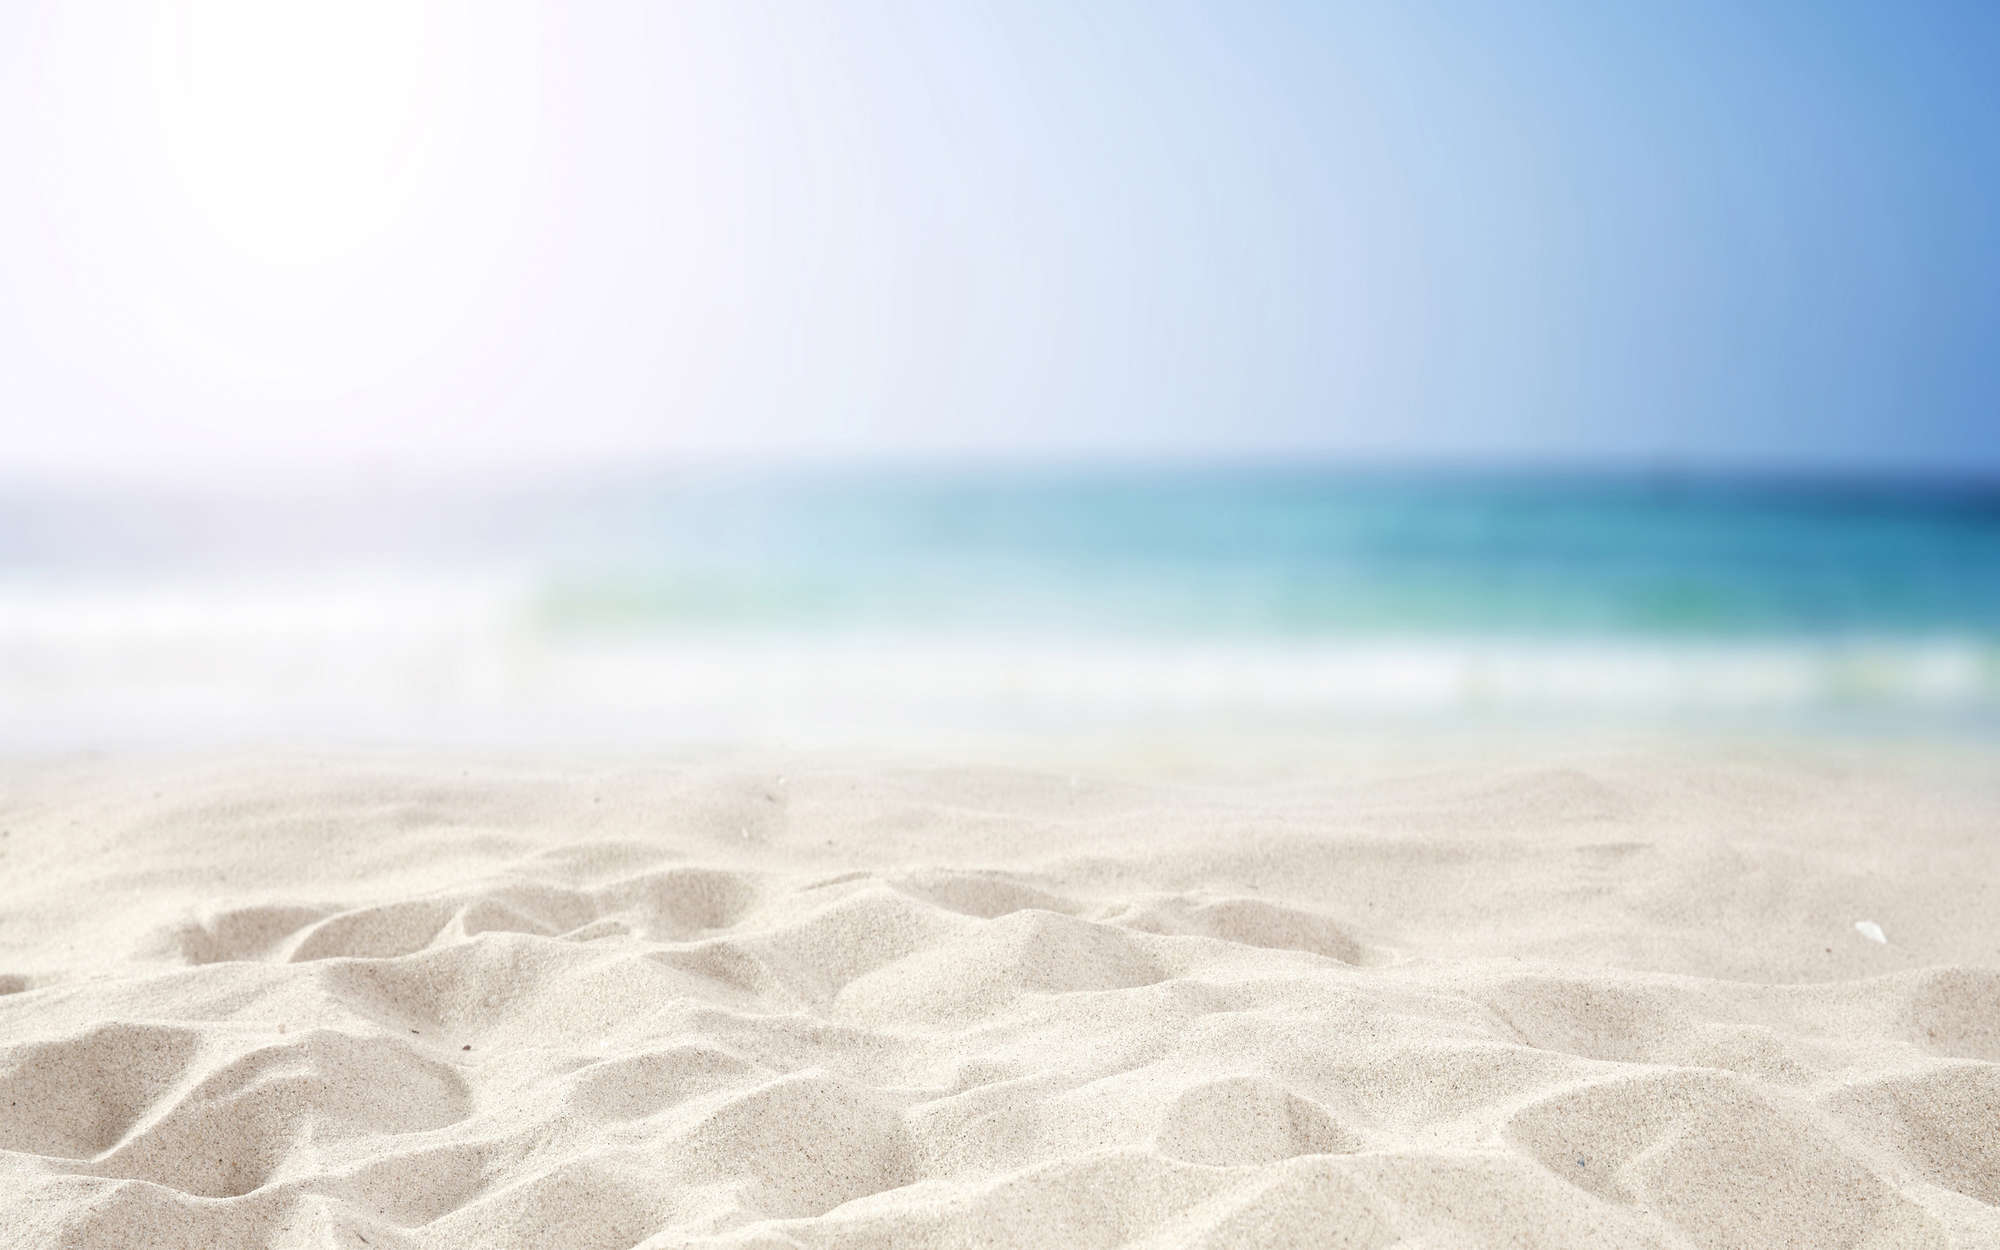             Fotomurali spiaggia con sabbia in bianco - vello liscio opaco
        